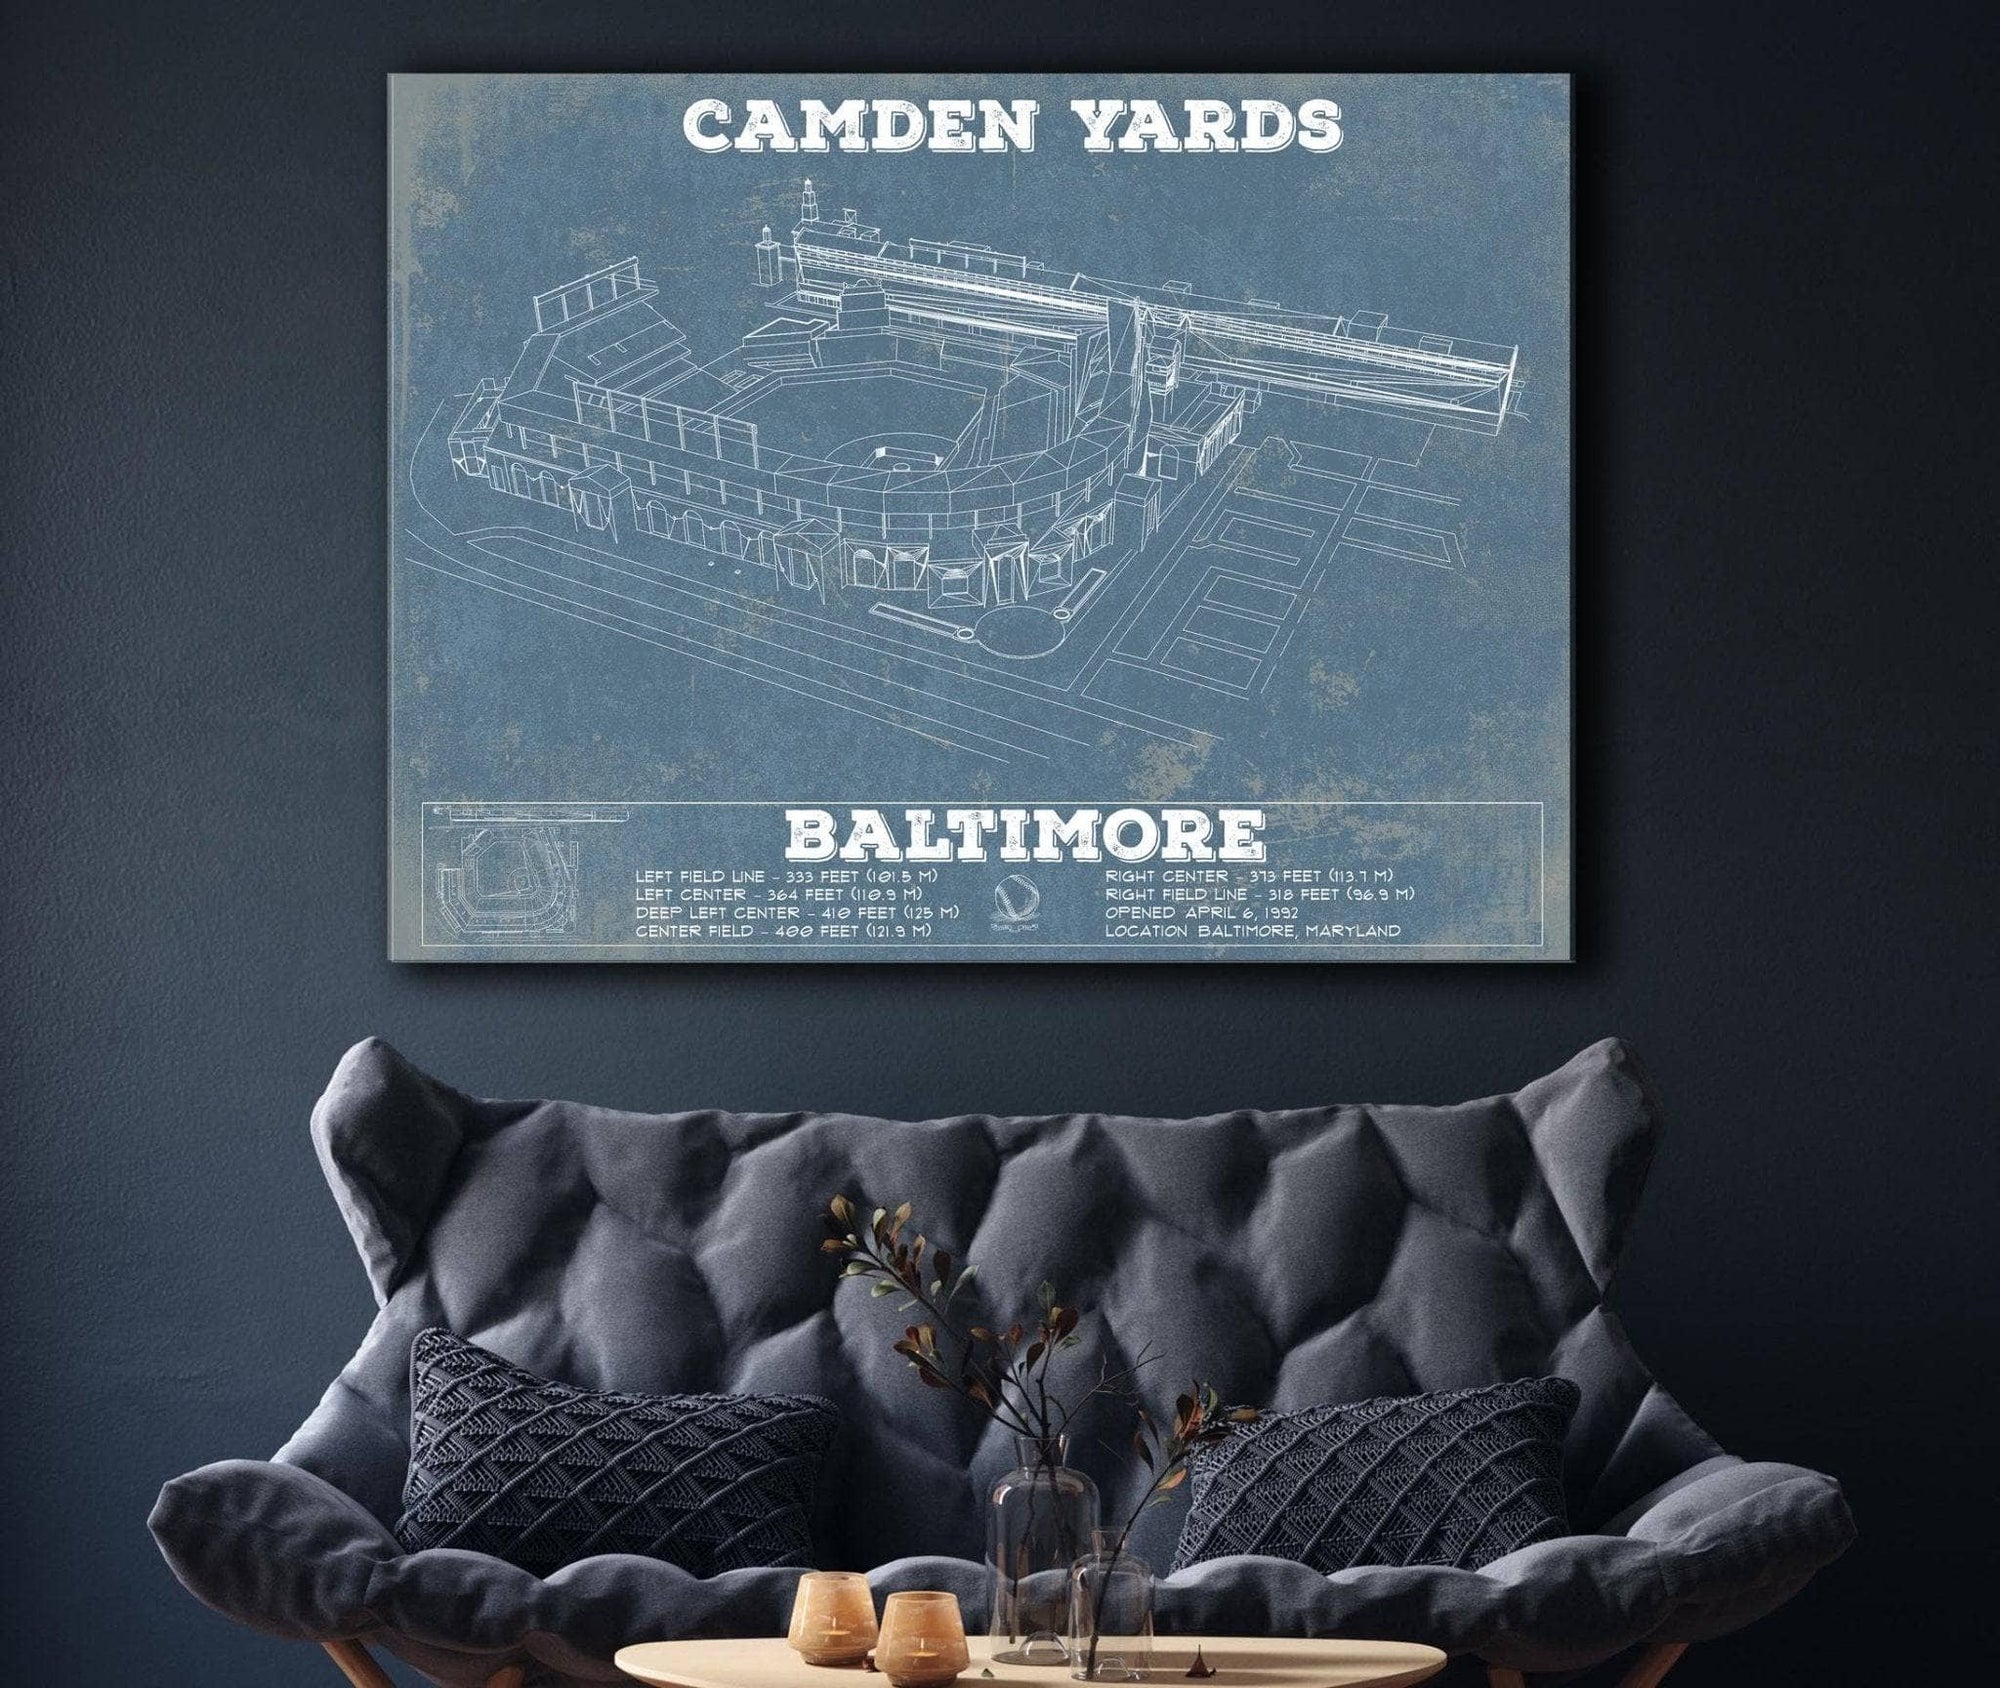 Cutler West Baseball Collection Camden Yards Art Baltimore Orioles Baseball Print